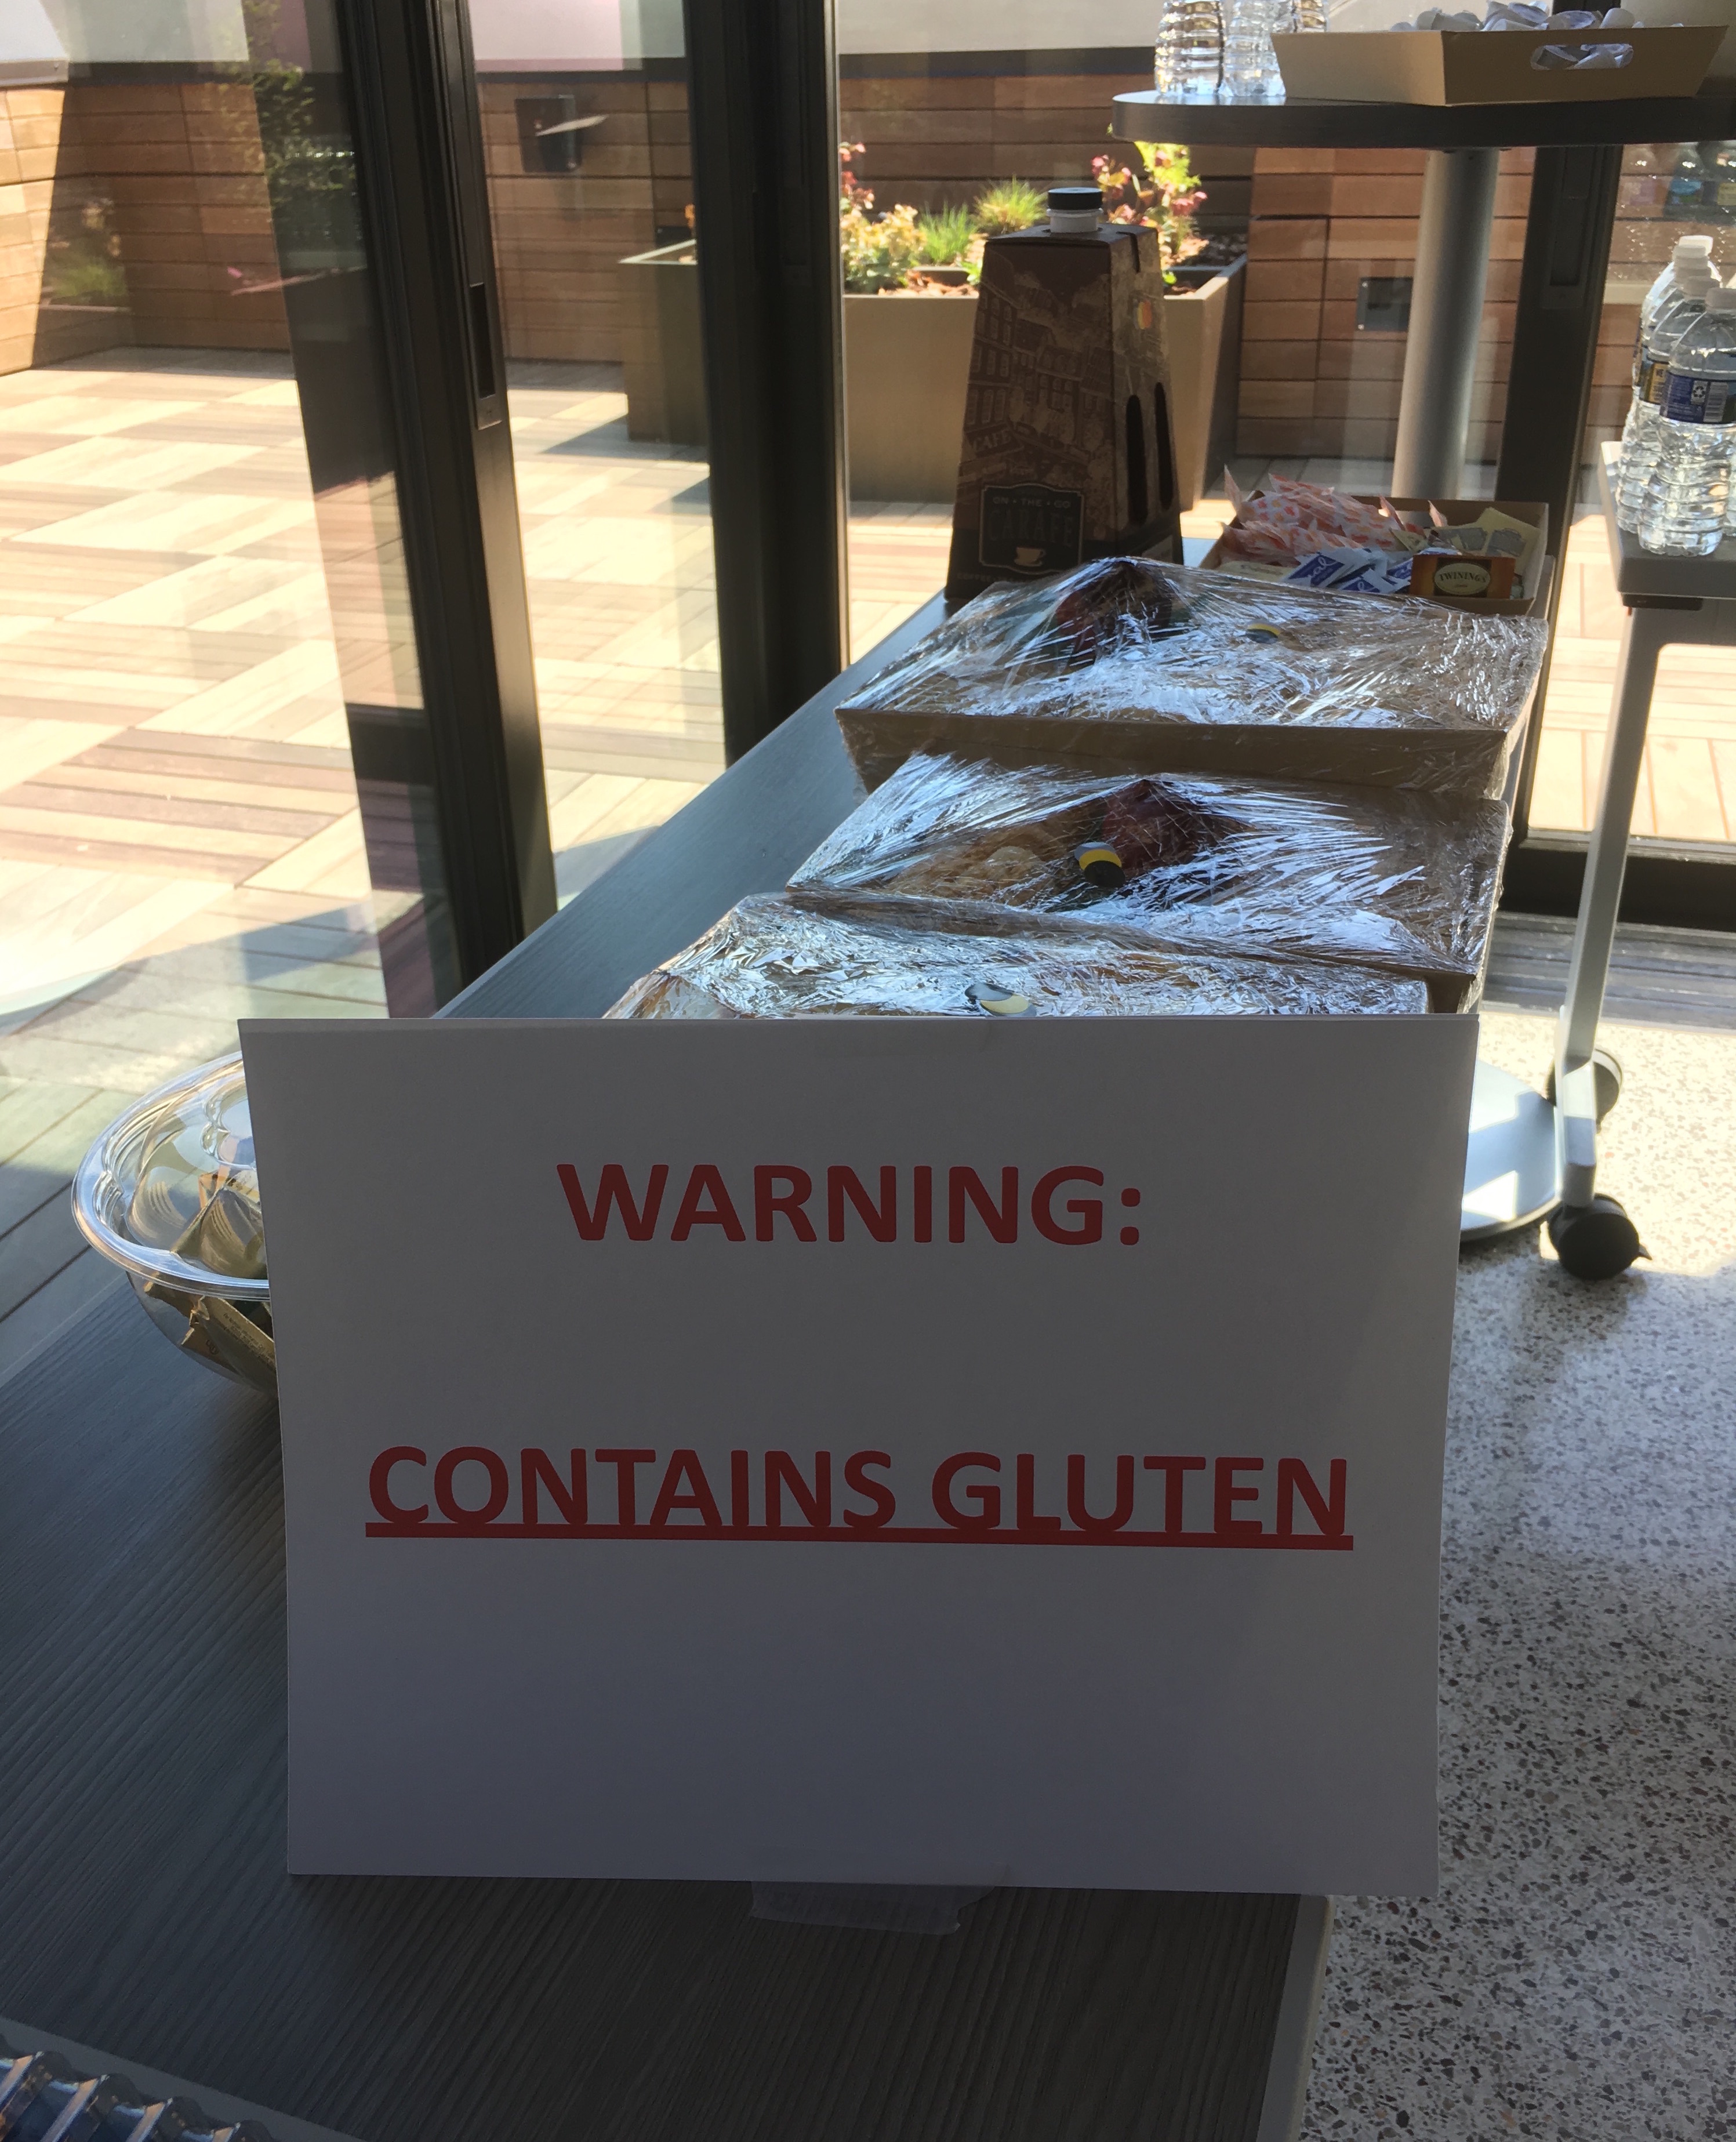 Gluten warning